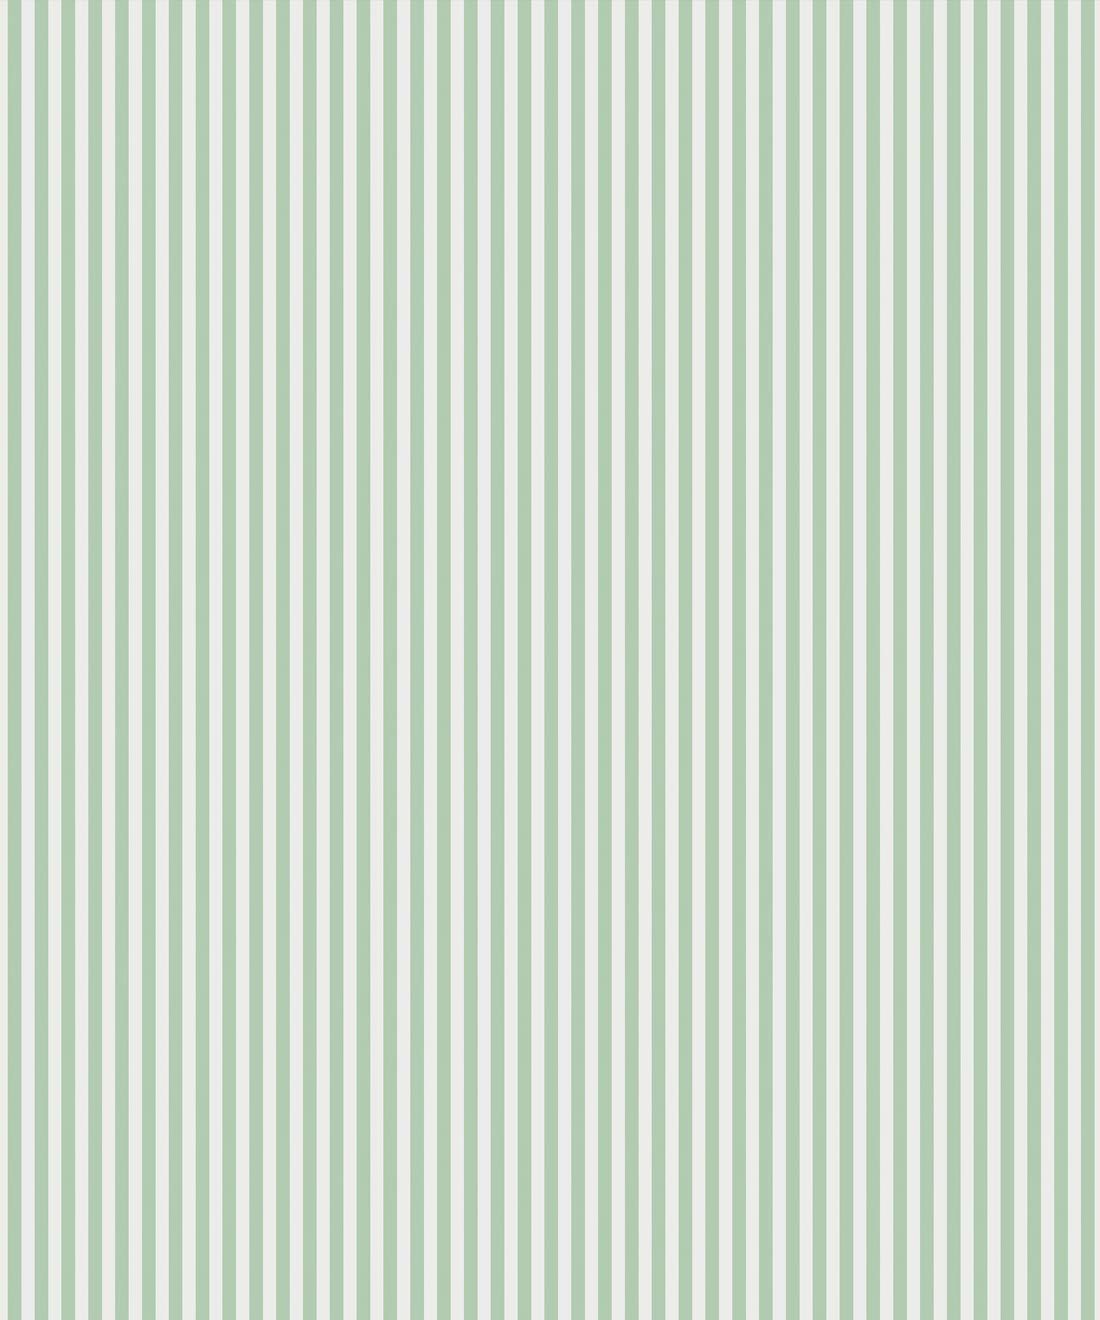 Candy Stripe Wallpaper • Classic Stipe Design AUS